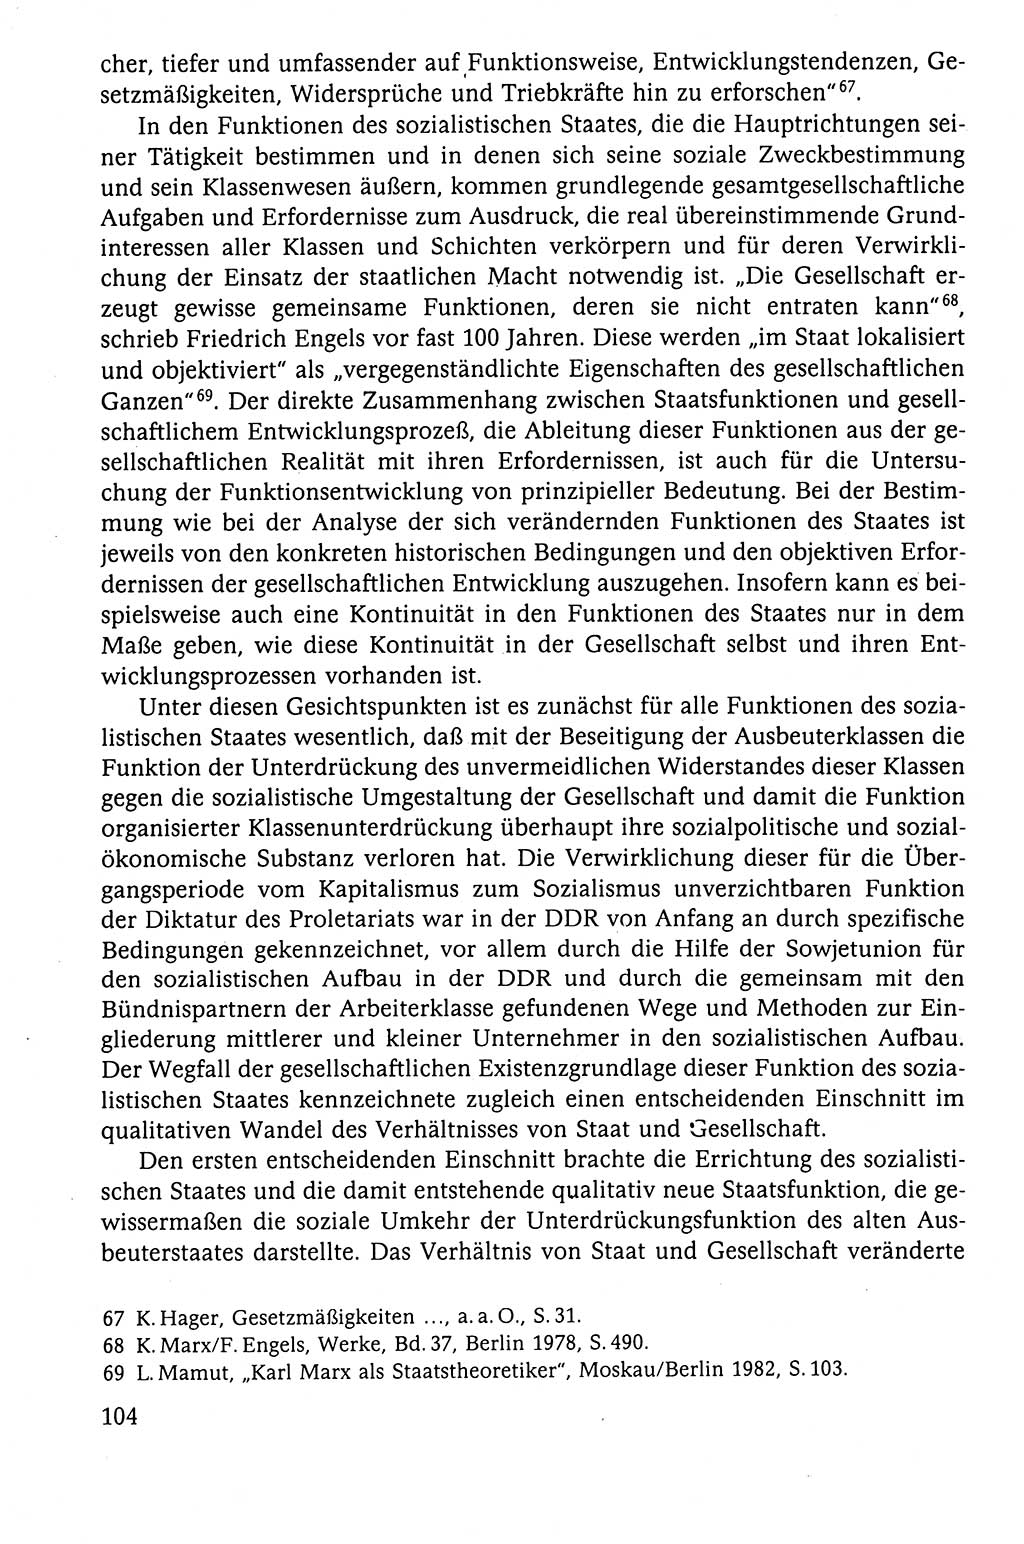 Der Staat im politischen System der DDR (Deutsche Demokratische Republik) 1986, Seite 104 (St. pol. Sys. DDR 1986, S. 104)